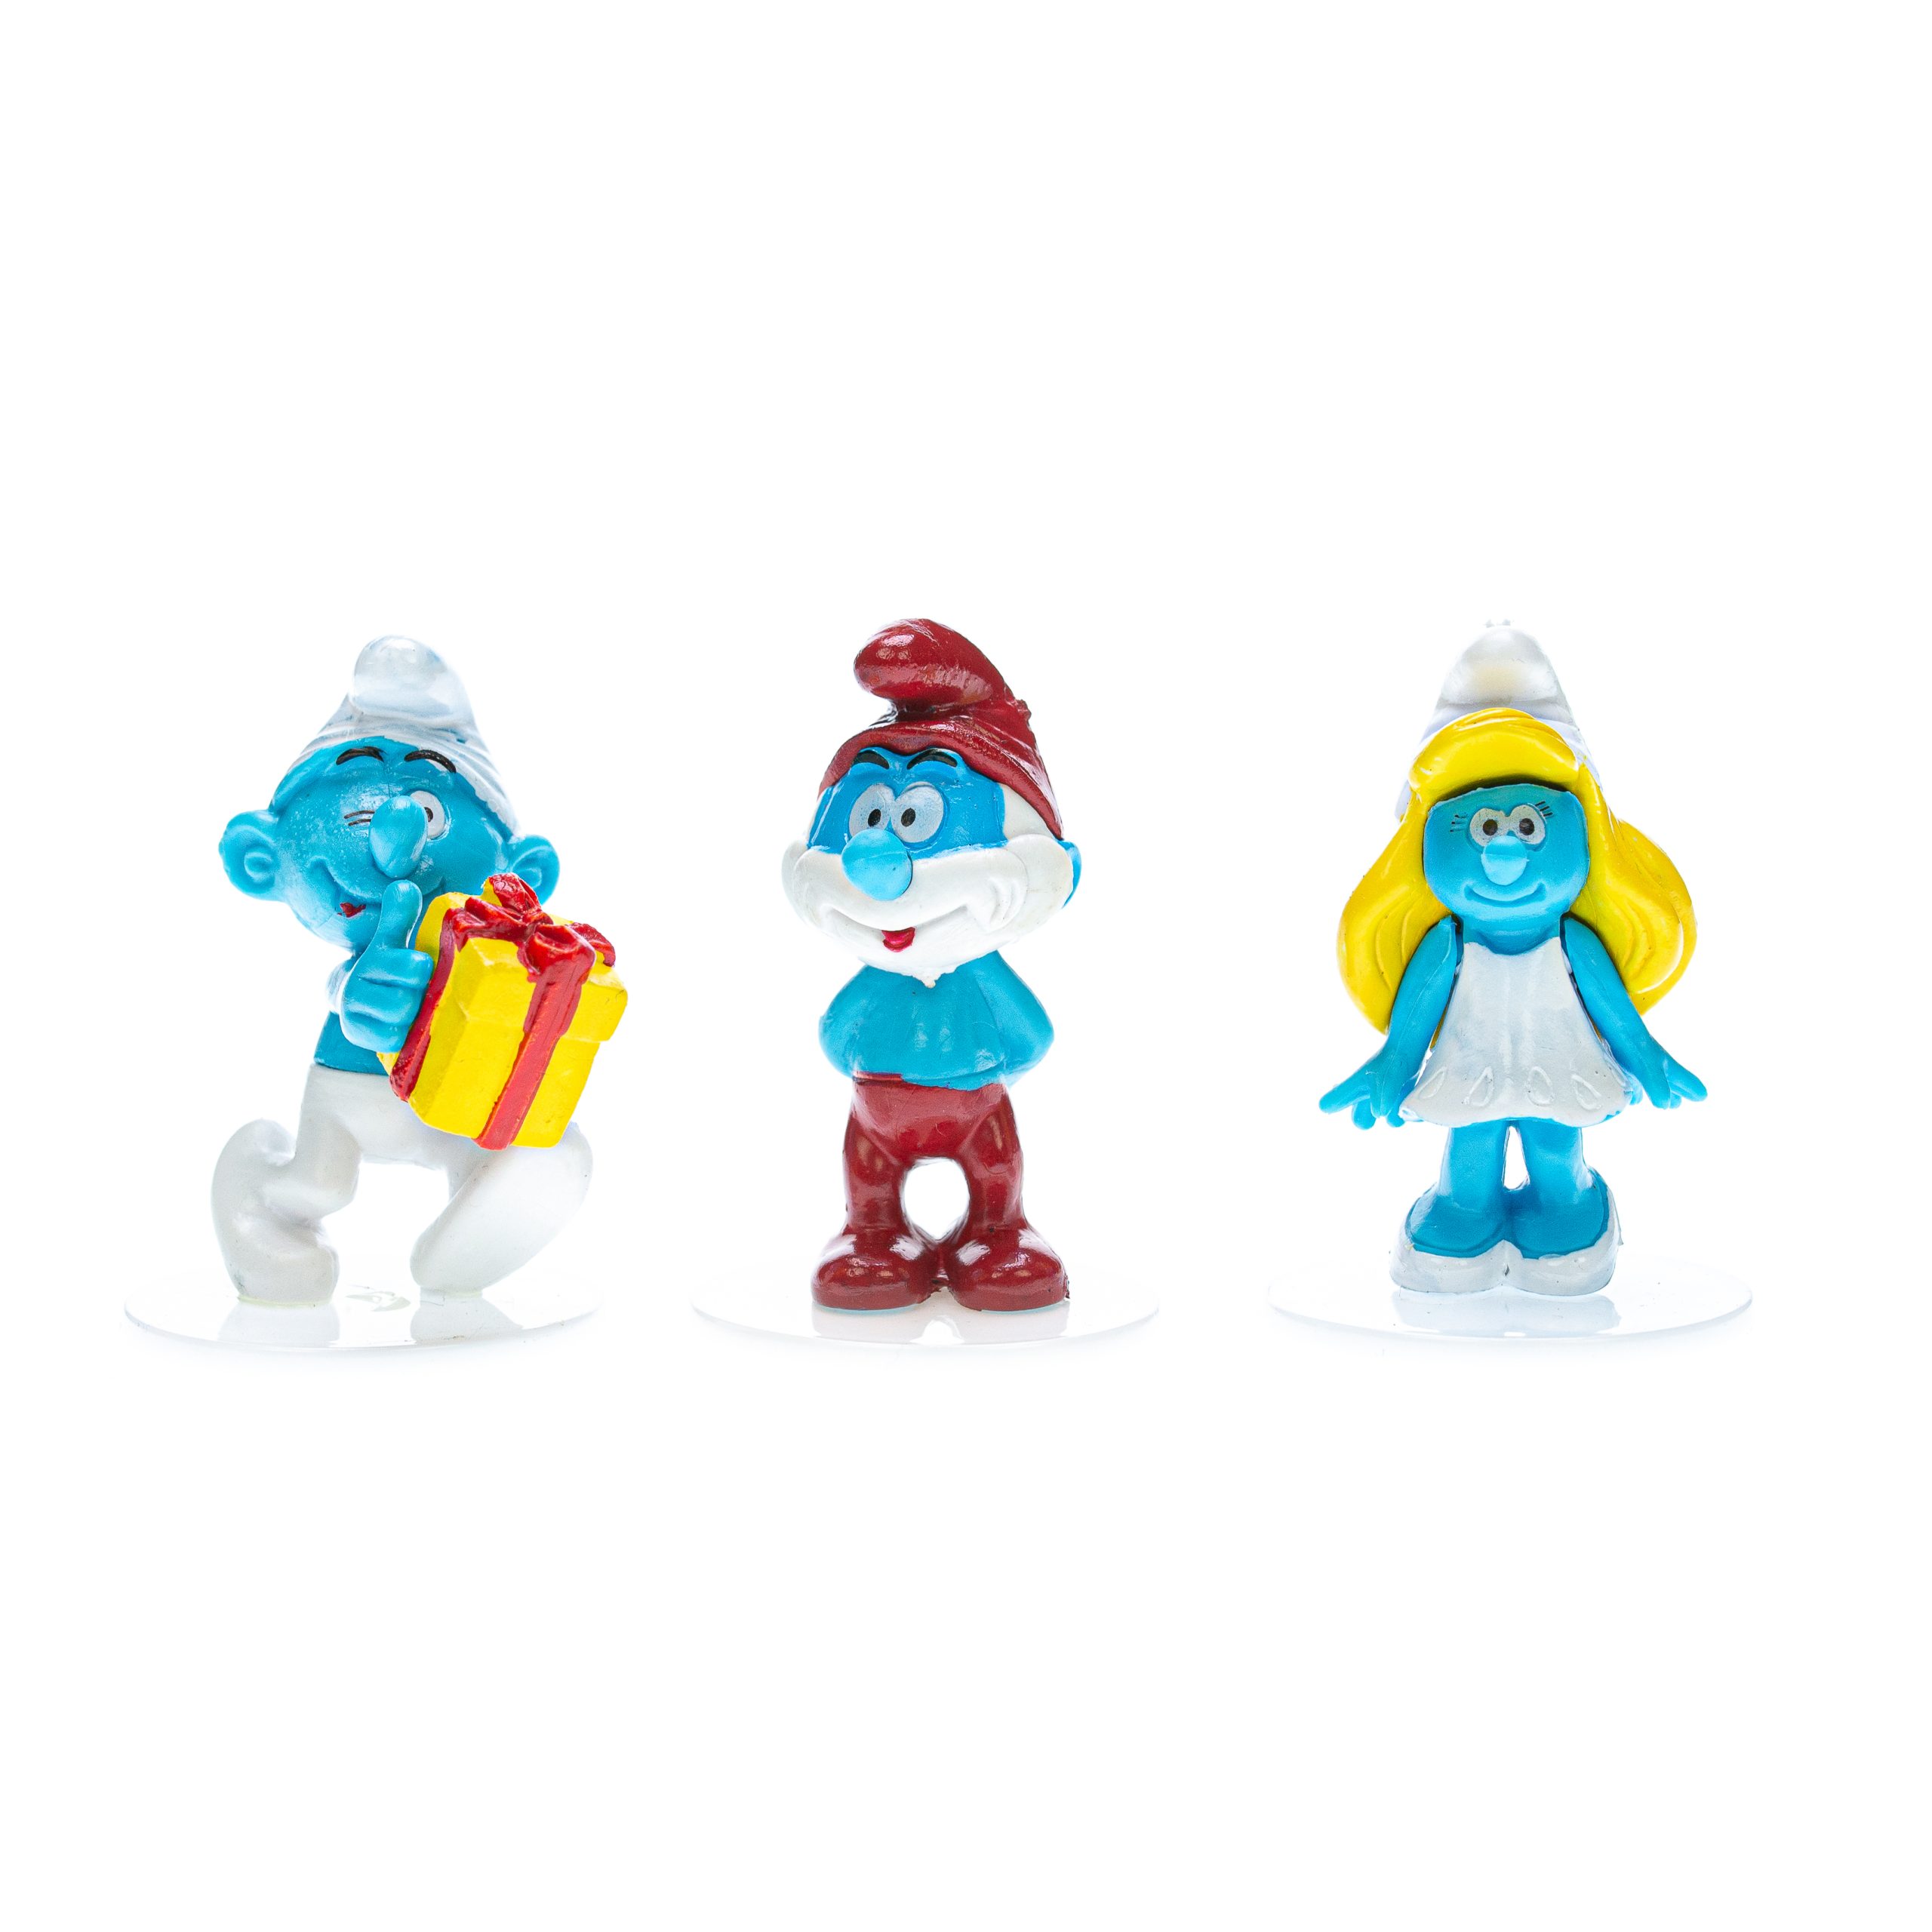 vuist handig uitbreiden Toys-set: Smurfen - Online bestellen - Trend Decor